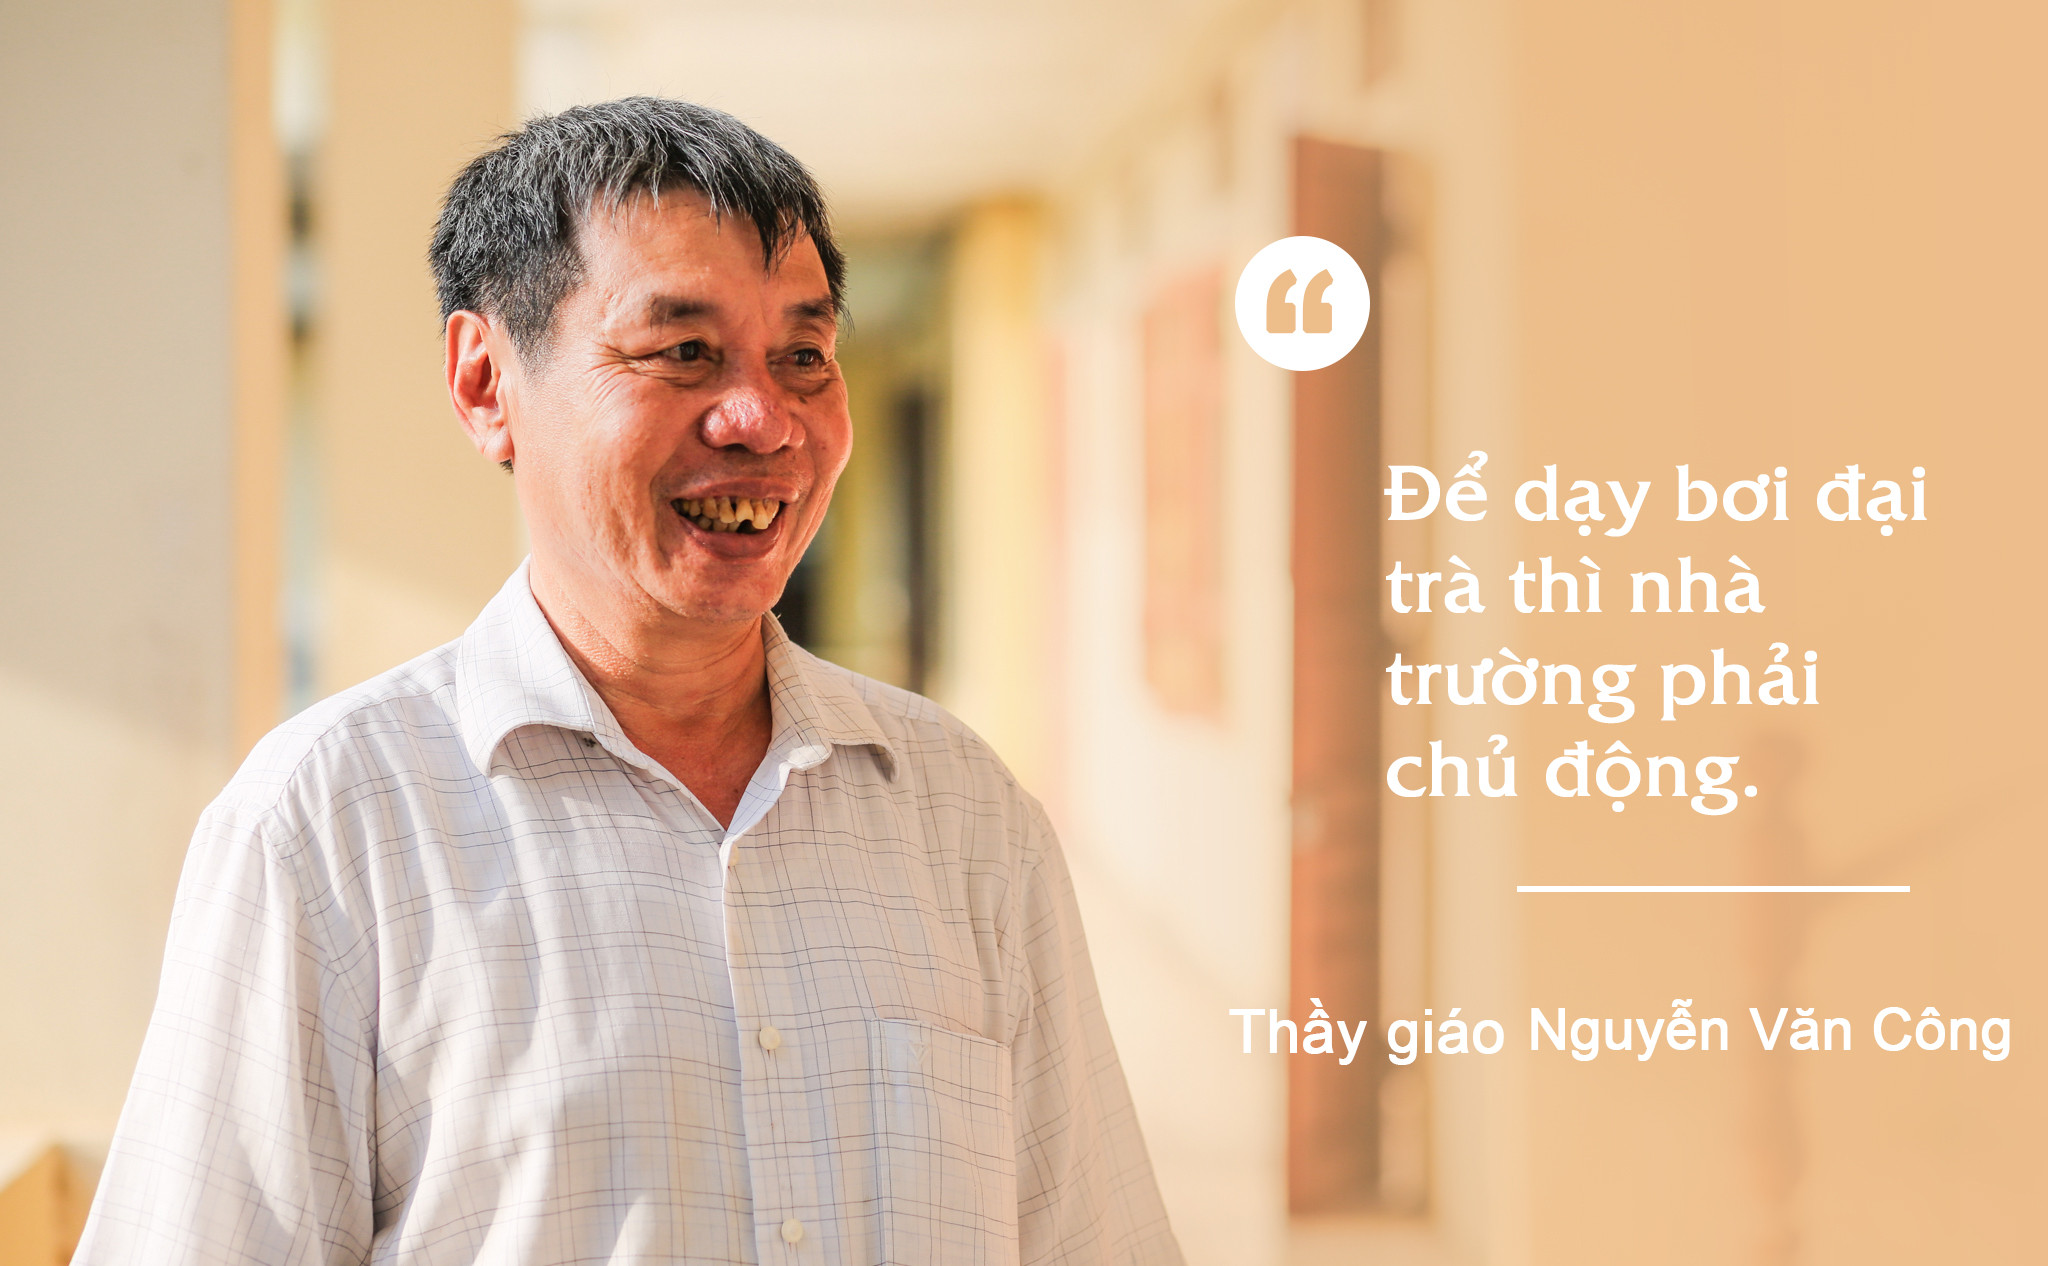 Thầy giáo Nguyễn Văn Công. Ảnh: Đức Anh